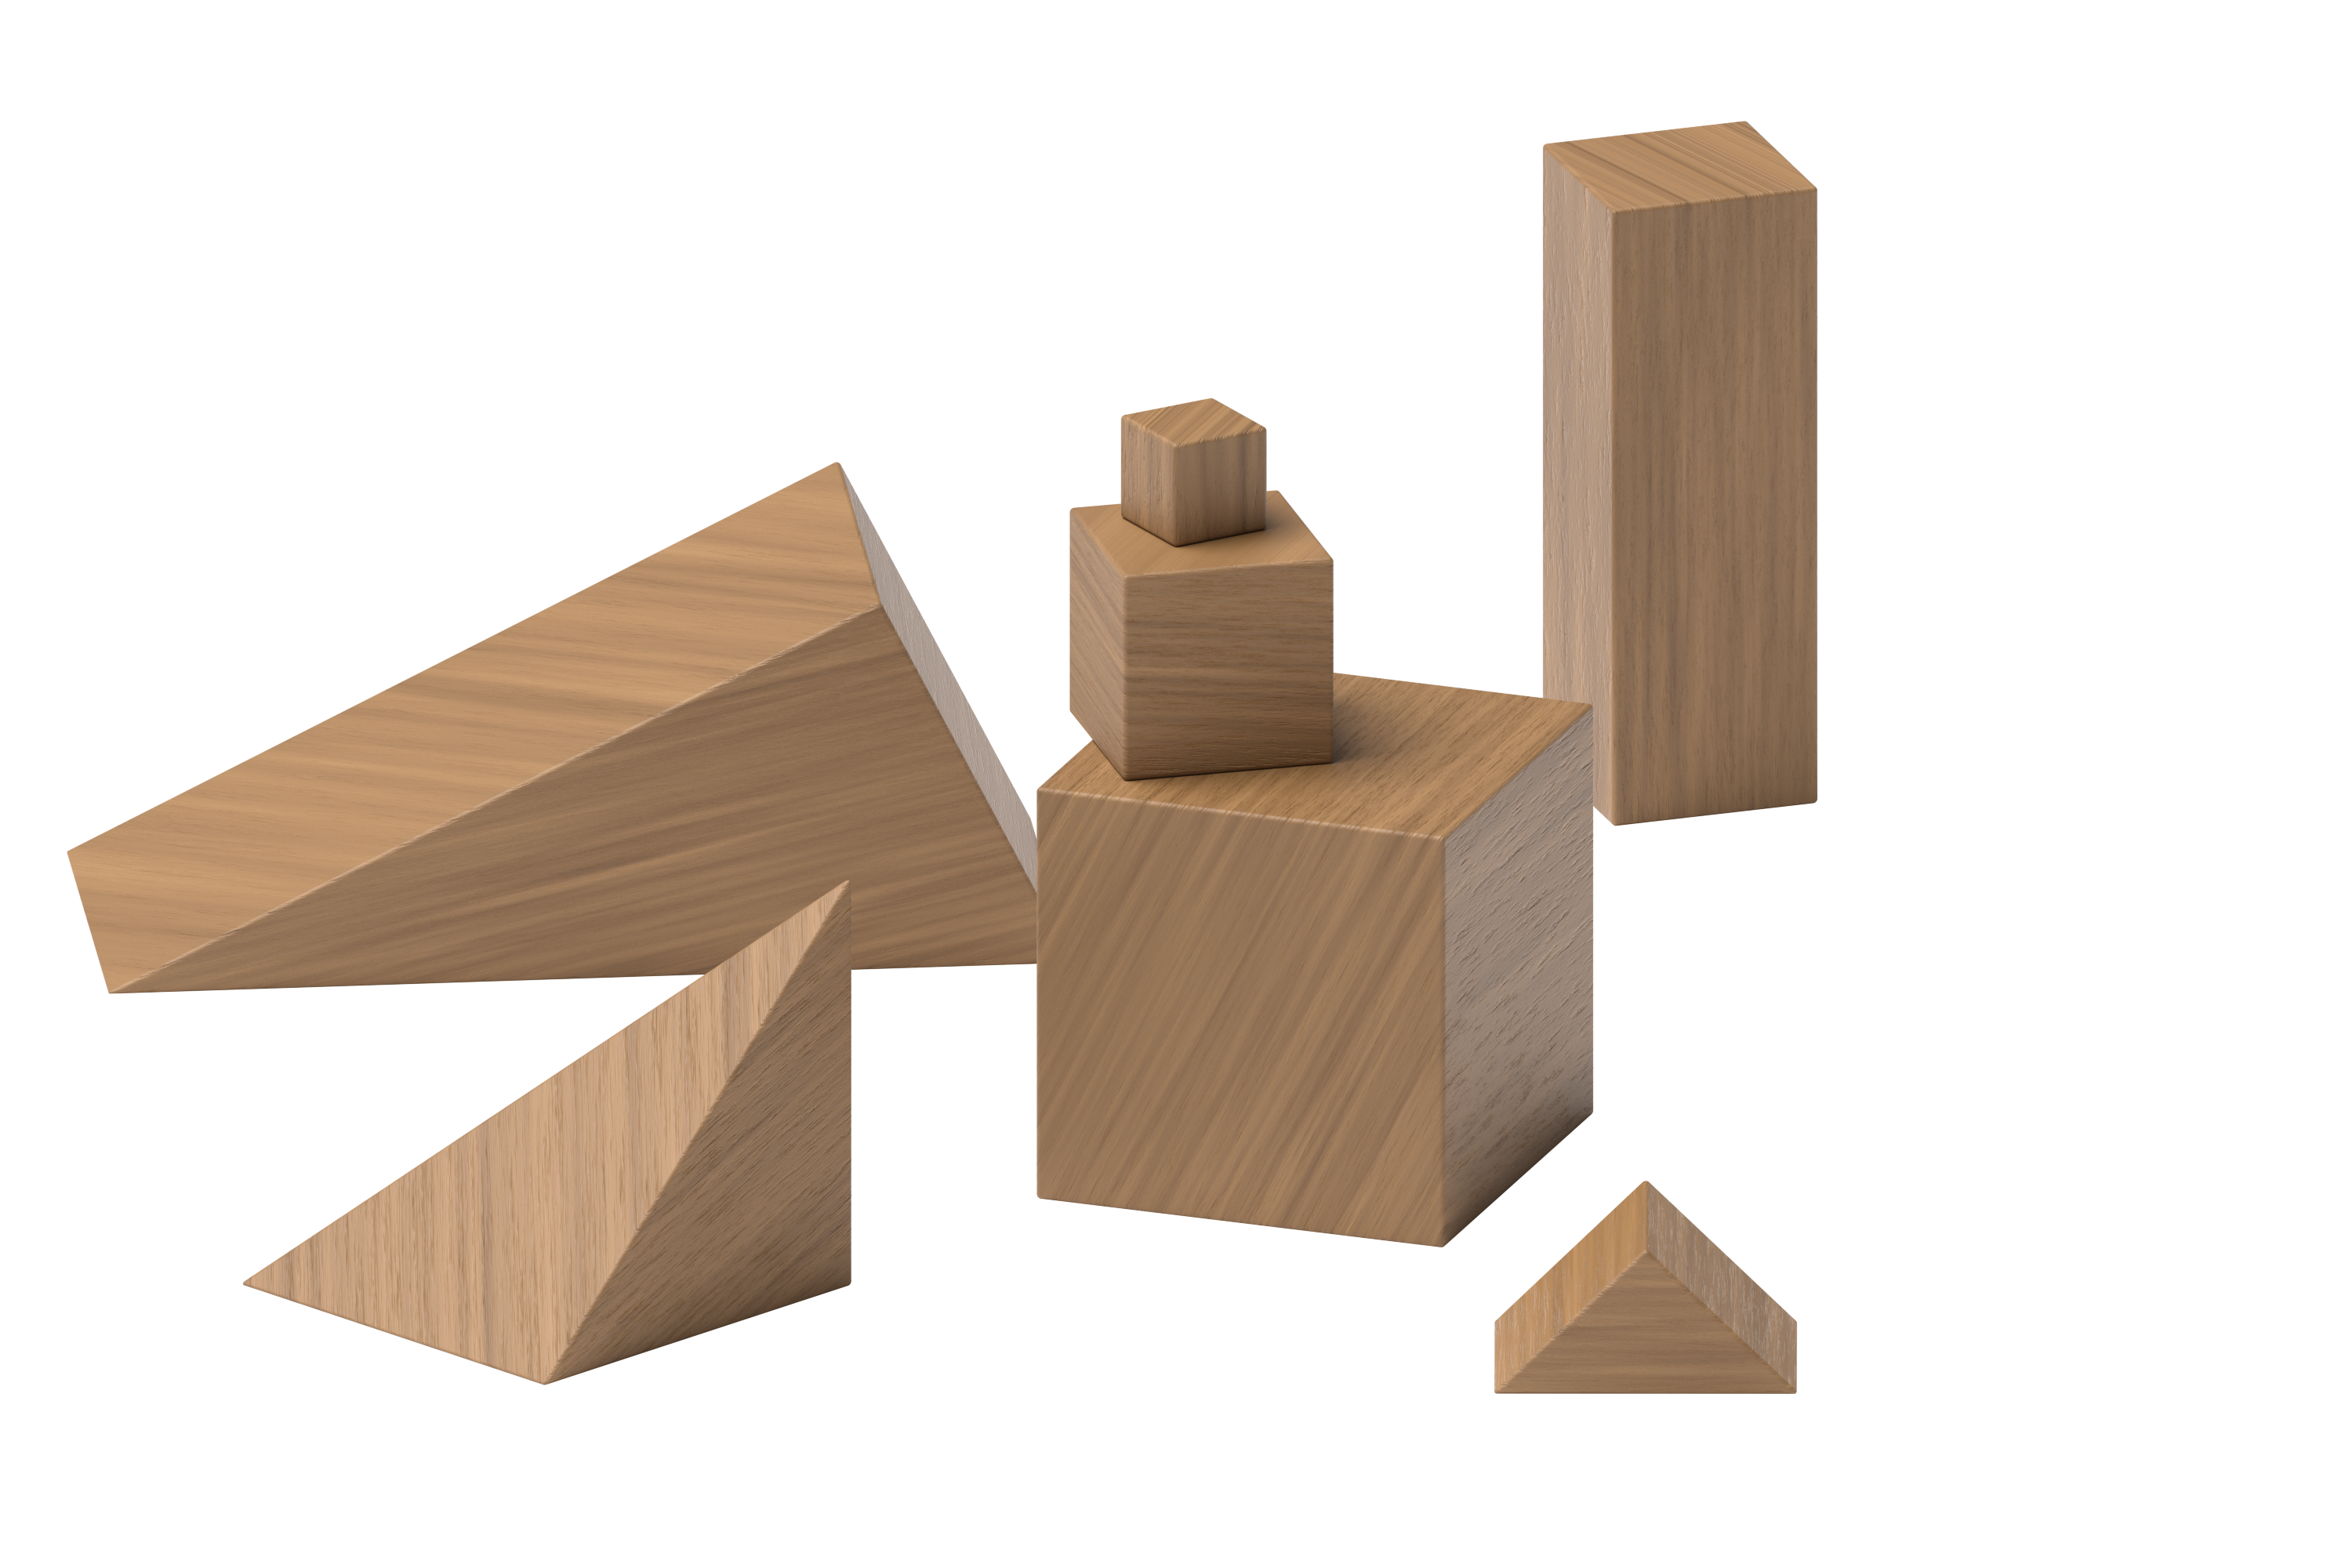 image of wood blocks